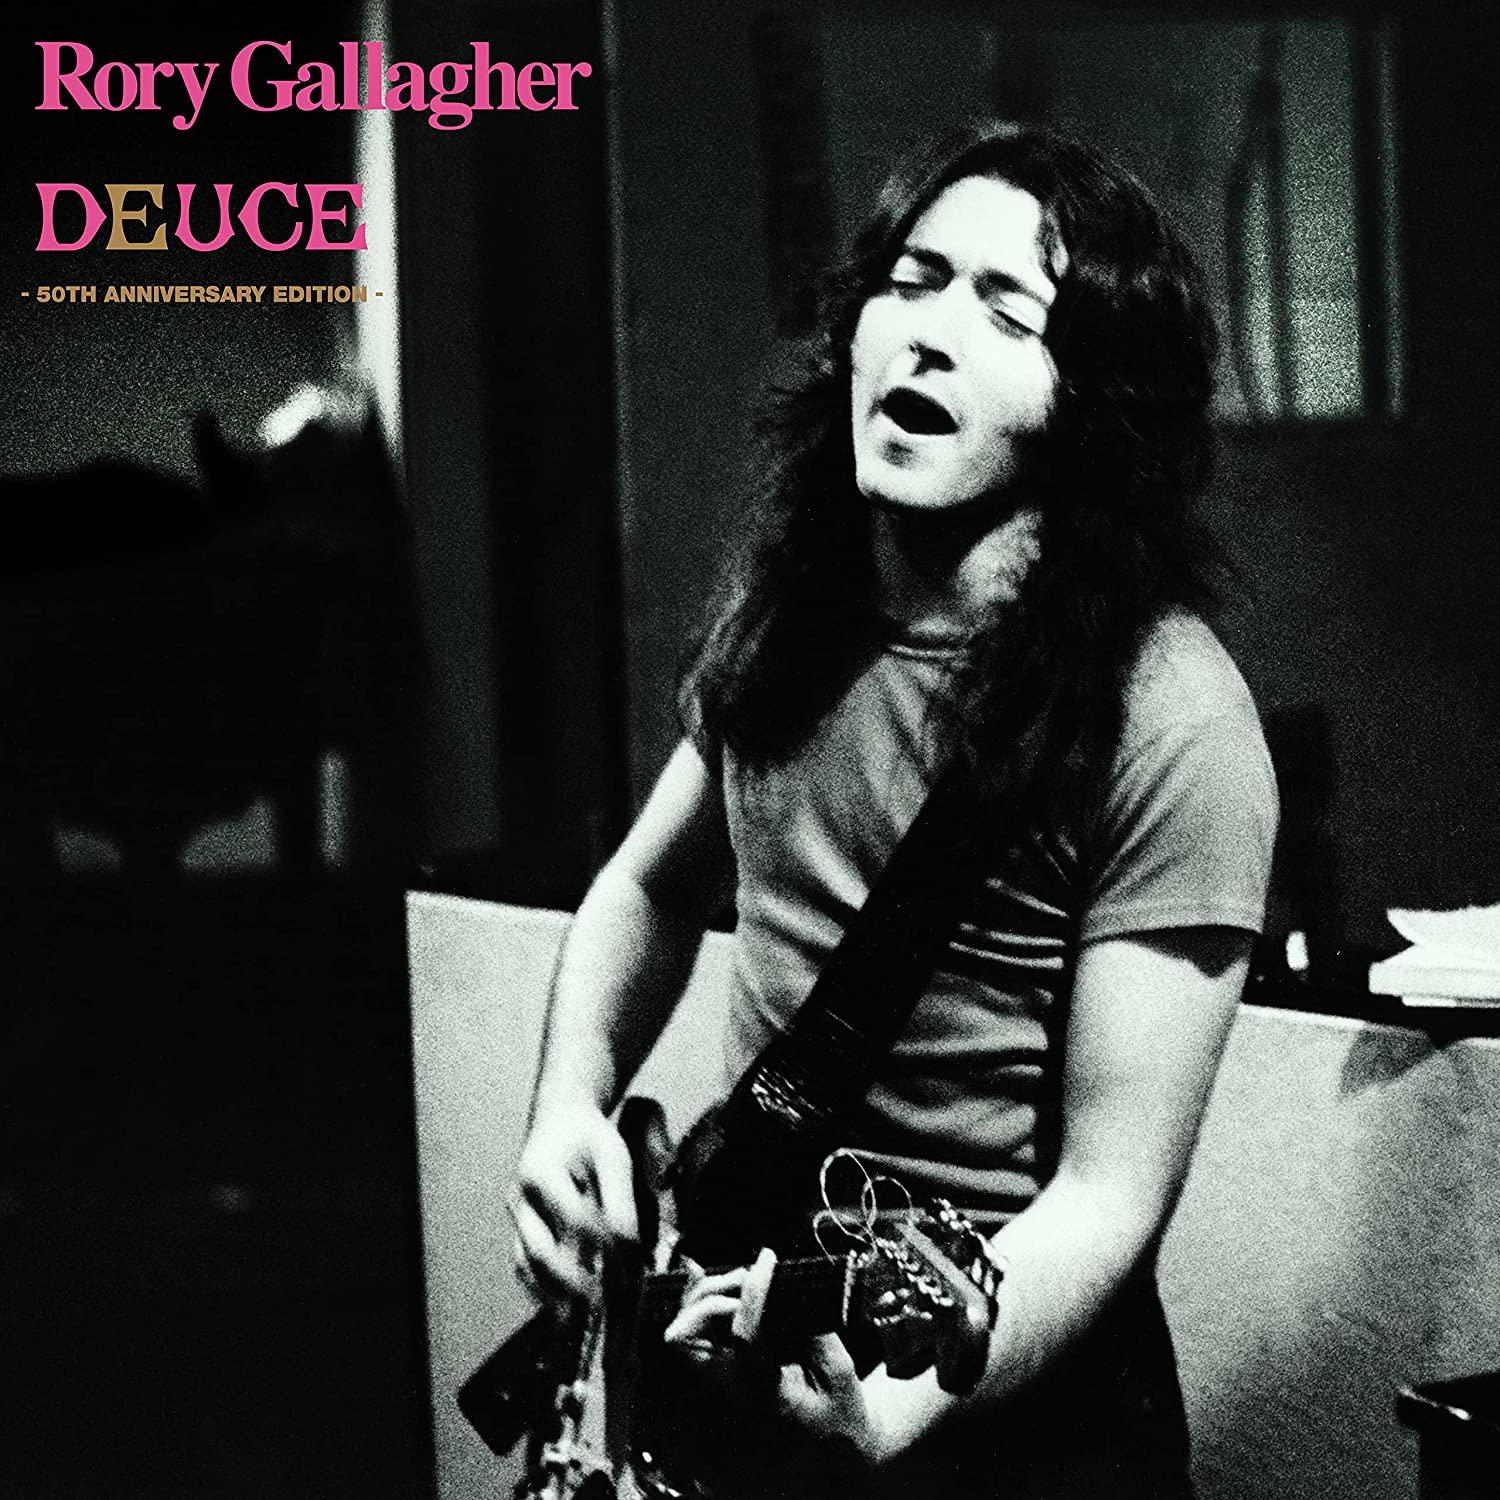 Rory Gallagher / Deuce reissue – SuperDeluxeEdition